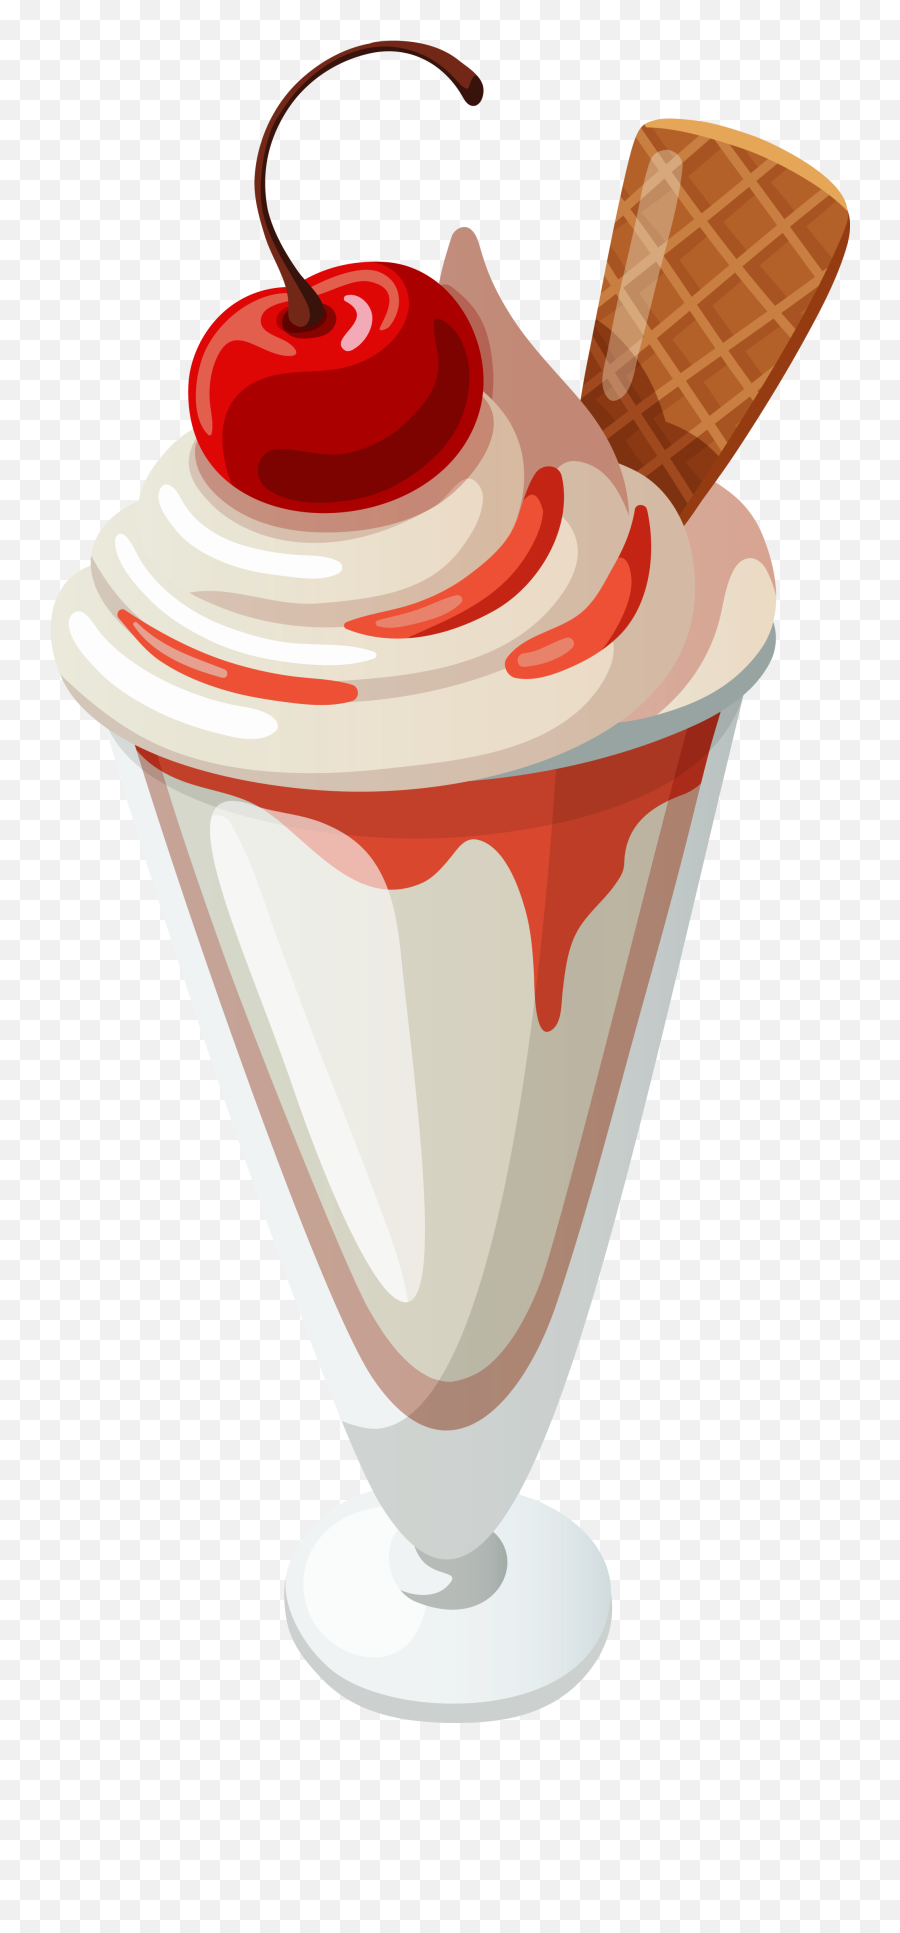 Ice Cream Sundae Clipart 6 - Ice Cream Sundae Clipart Transparent Emoji,Ice Cream And Sun Emoji